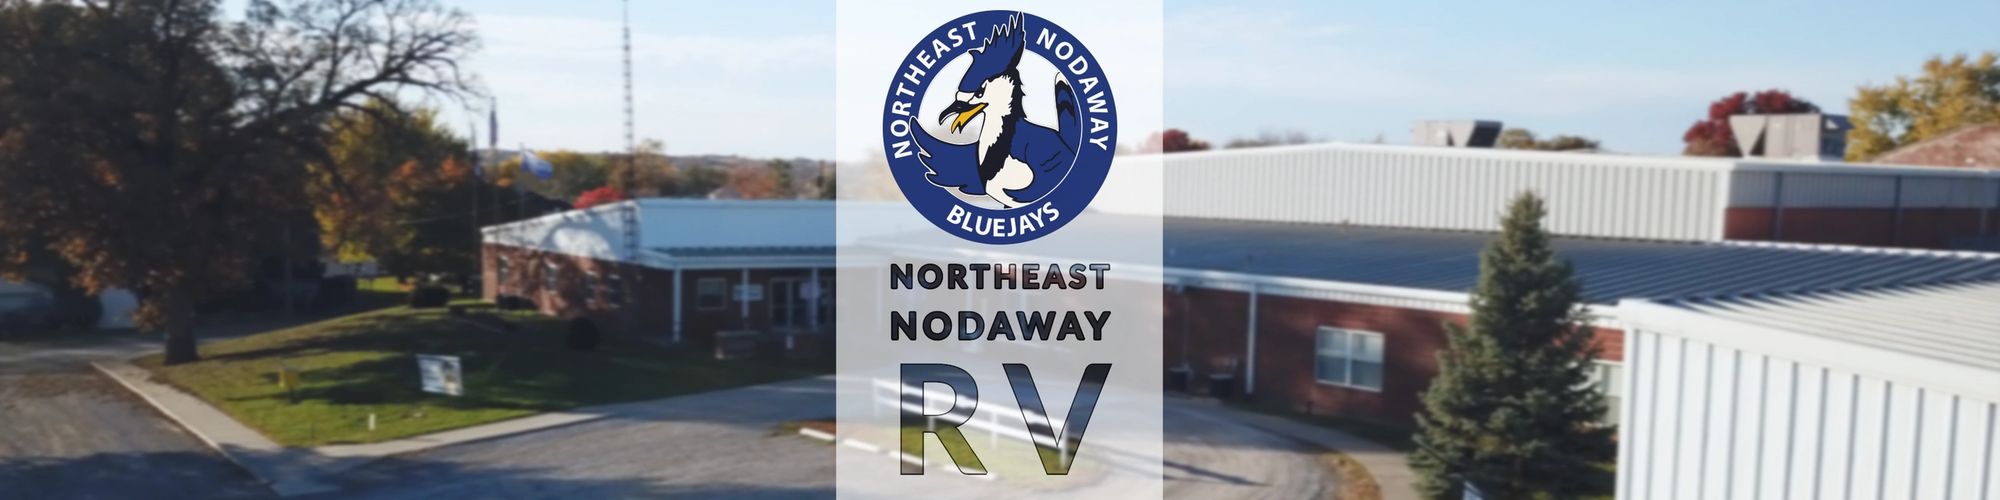 Northeast Nodaway School District Building and Logo.